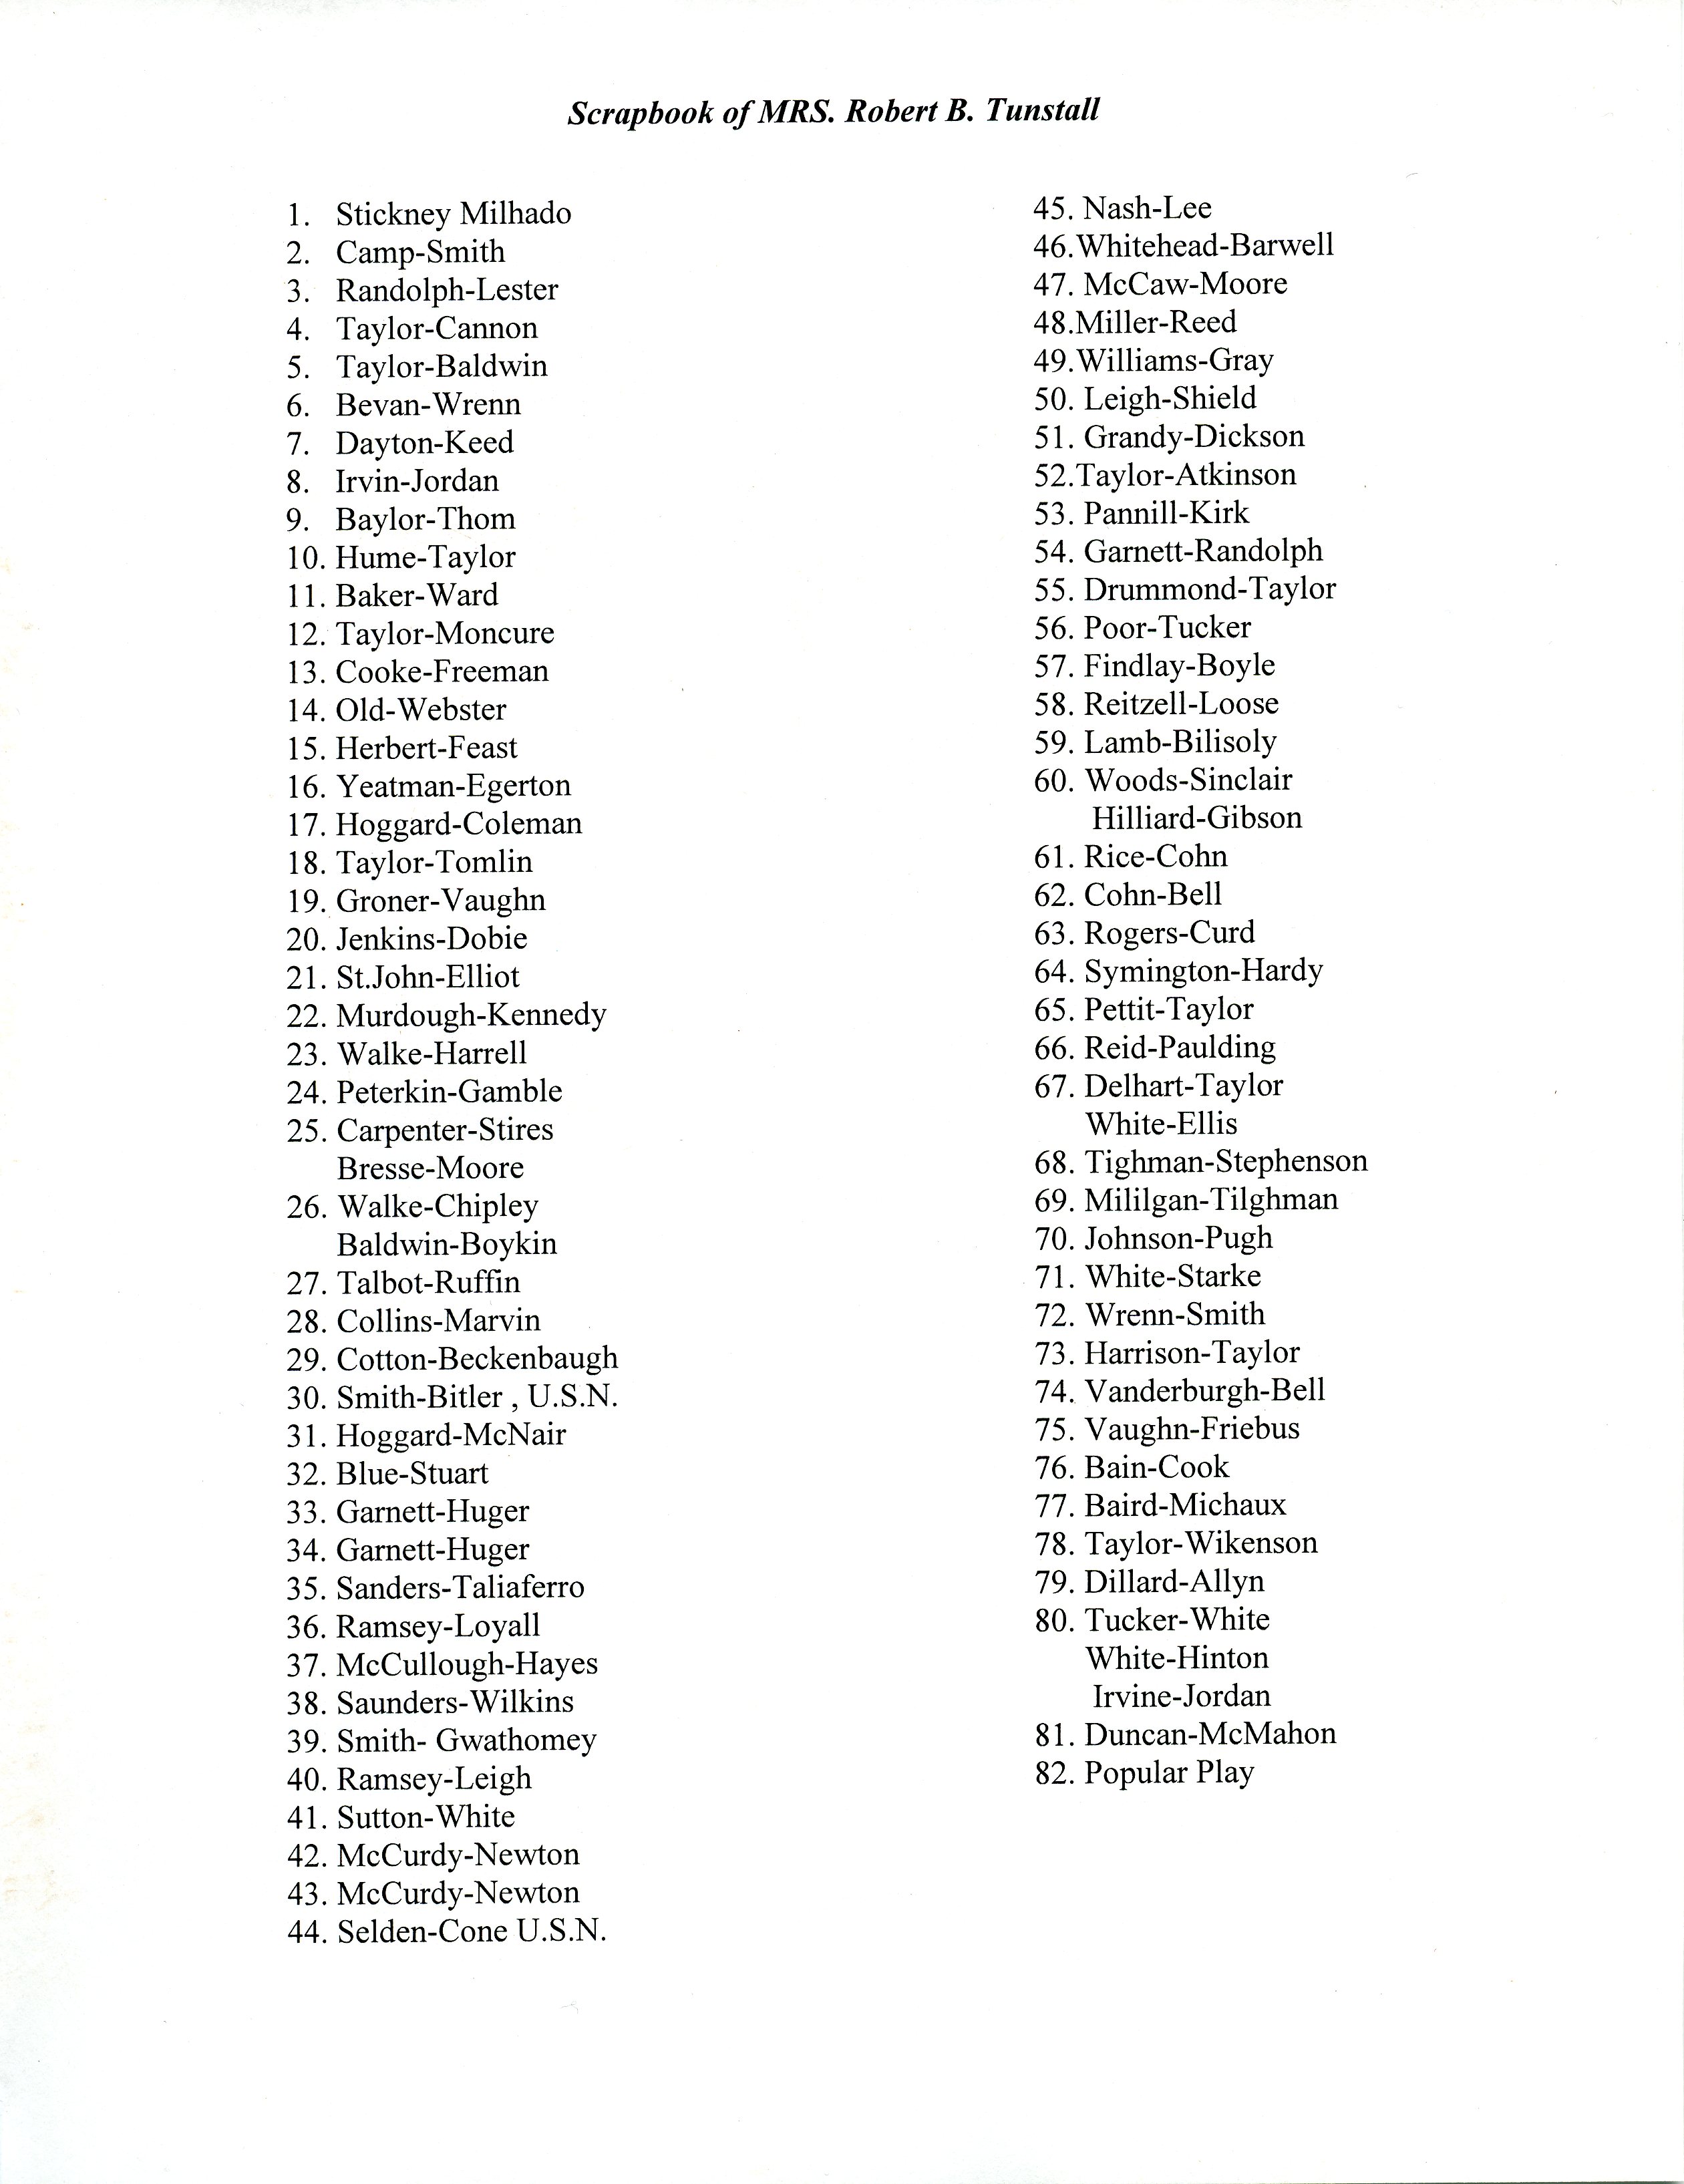 List, Scrapbook of Mrs. Robert B. Tunstall